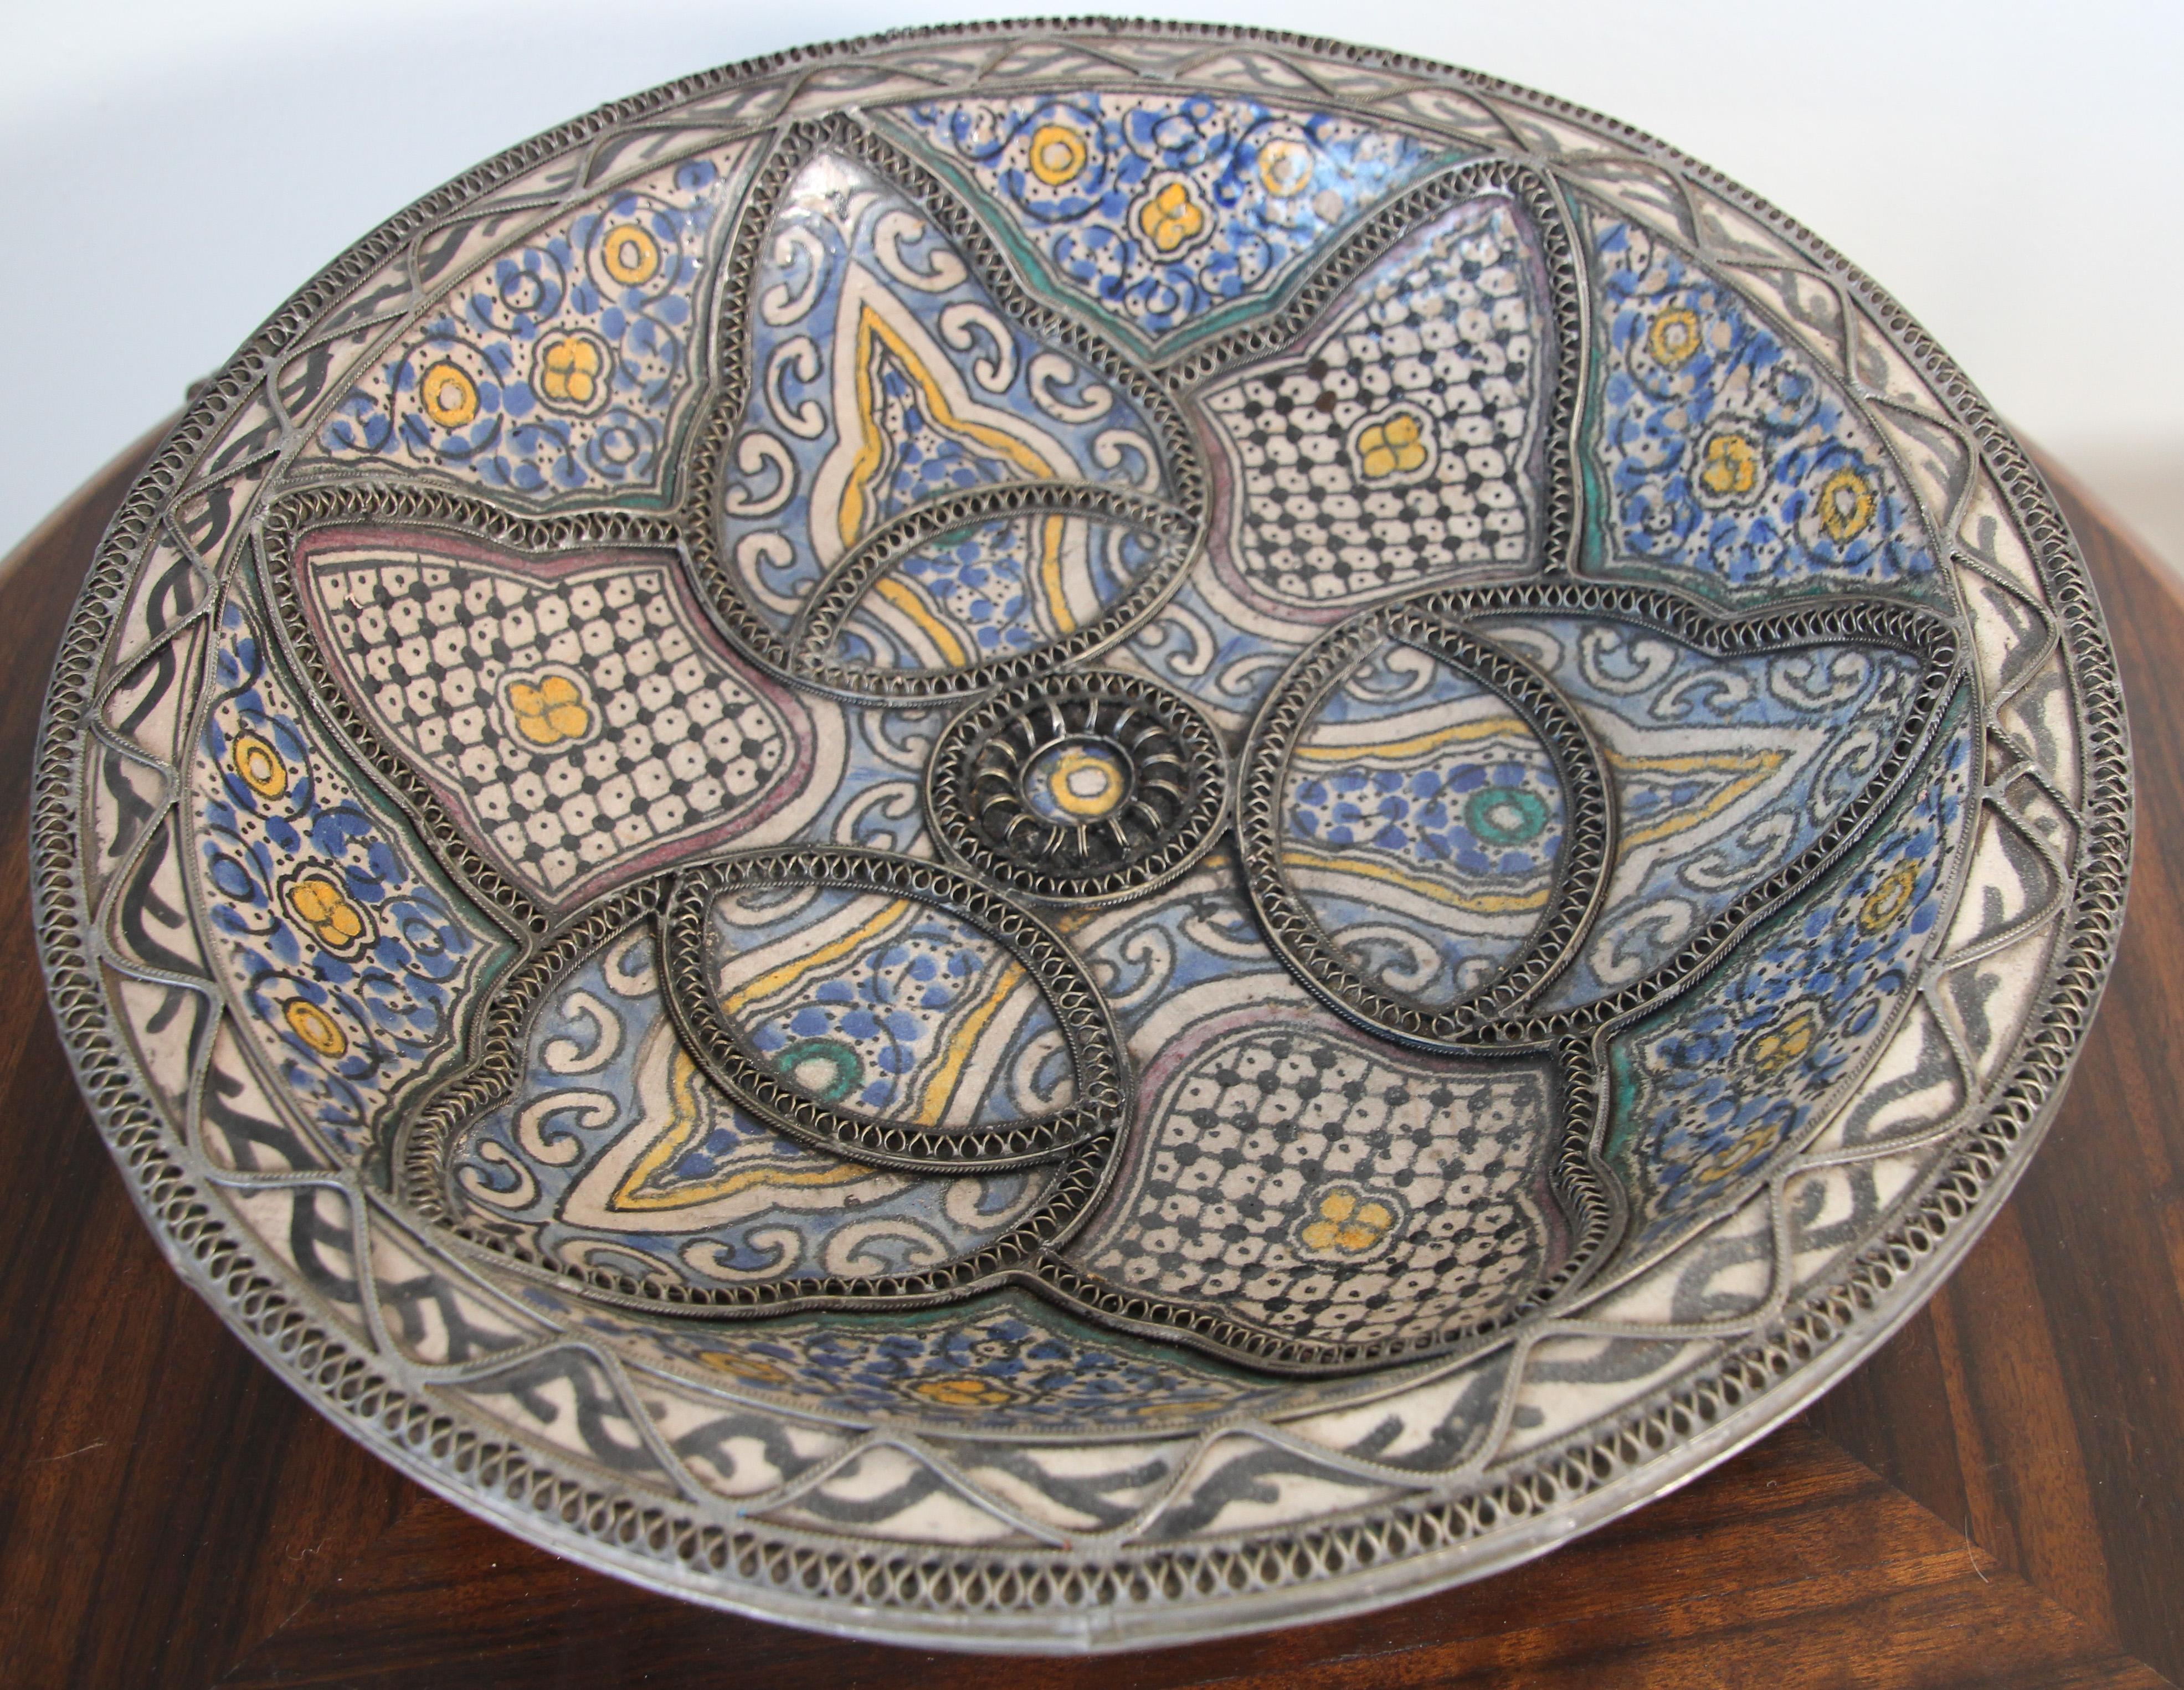 Grand bol en céramique décorative mauresque polychrome, fabriqué à la main à Fès. 
Bleu de Fez, très beaux designs peints à la main par un artiste de Fez.
Coupe ancienne en céramique fabriquée à la main avec des motifs géométriques et floraux en